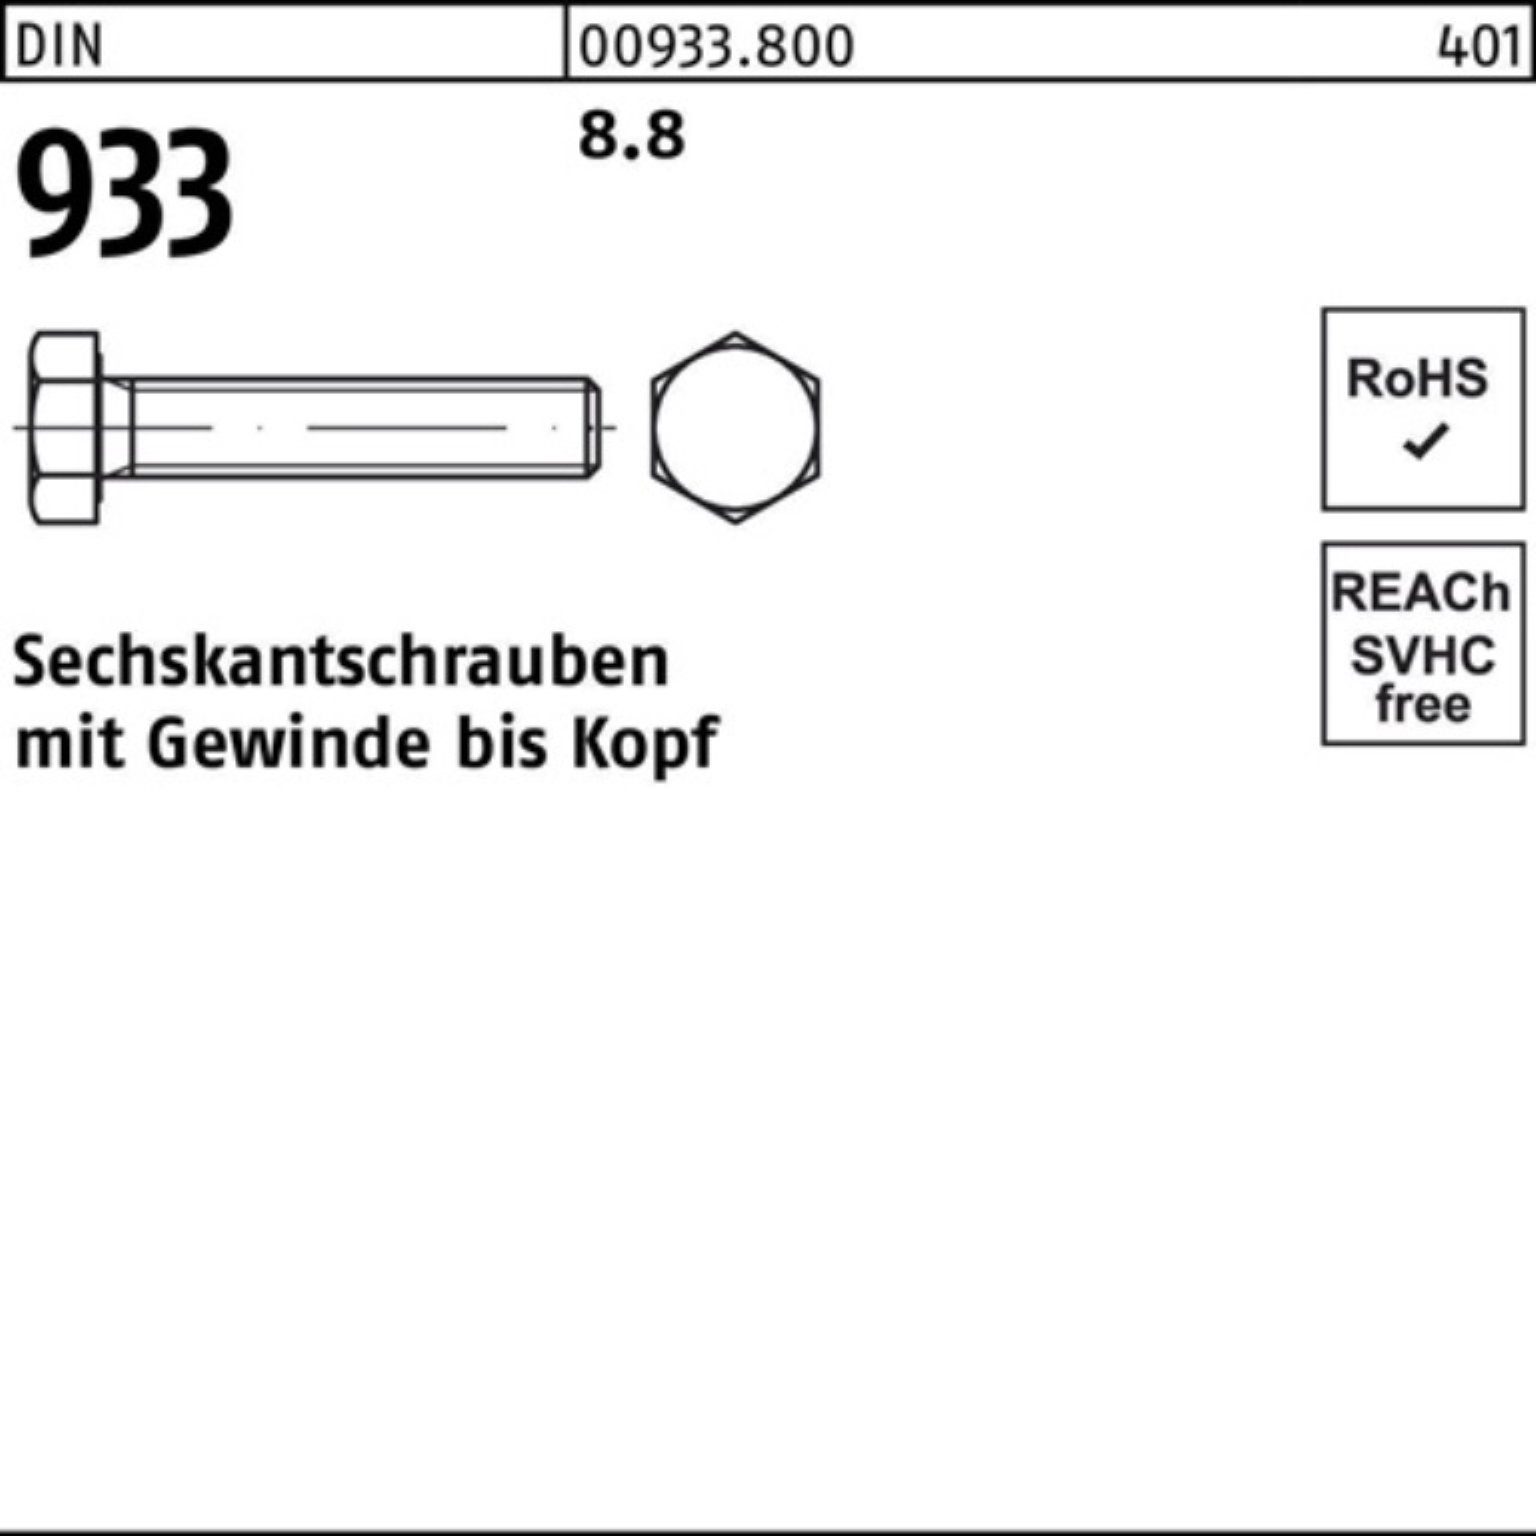 Reyher Sechskantschraube 100er Pack Sechskantschraube 933 8.8 DIN Stück DIN VG M22x 933 1 180